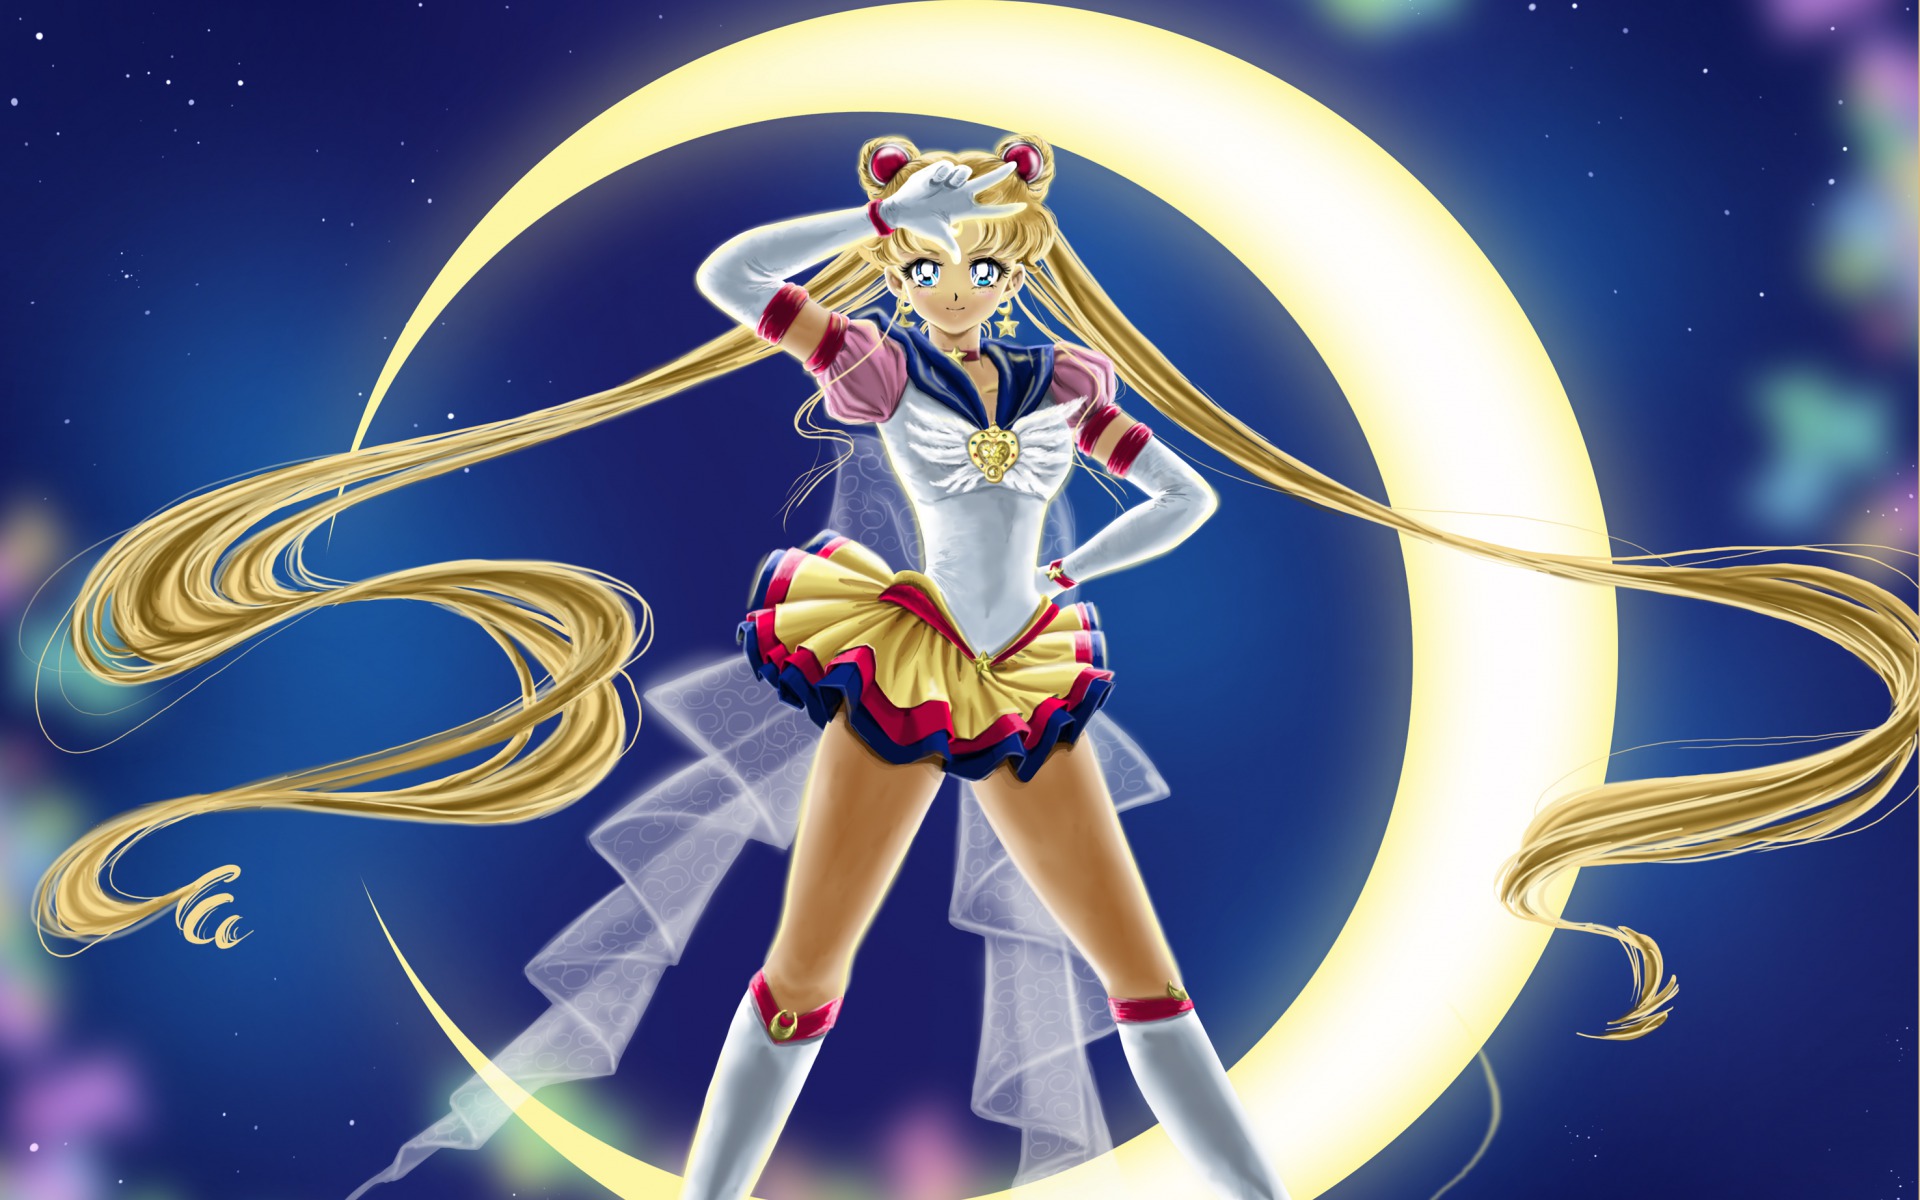 Sailor Moon Background Wallpaper Wallusia.com